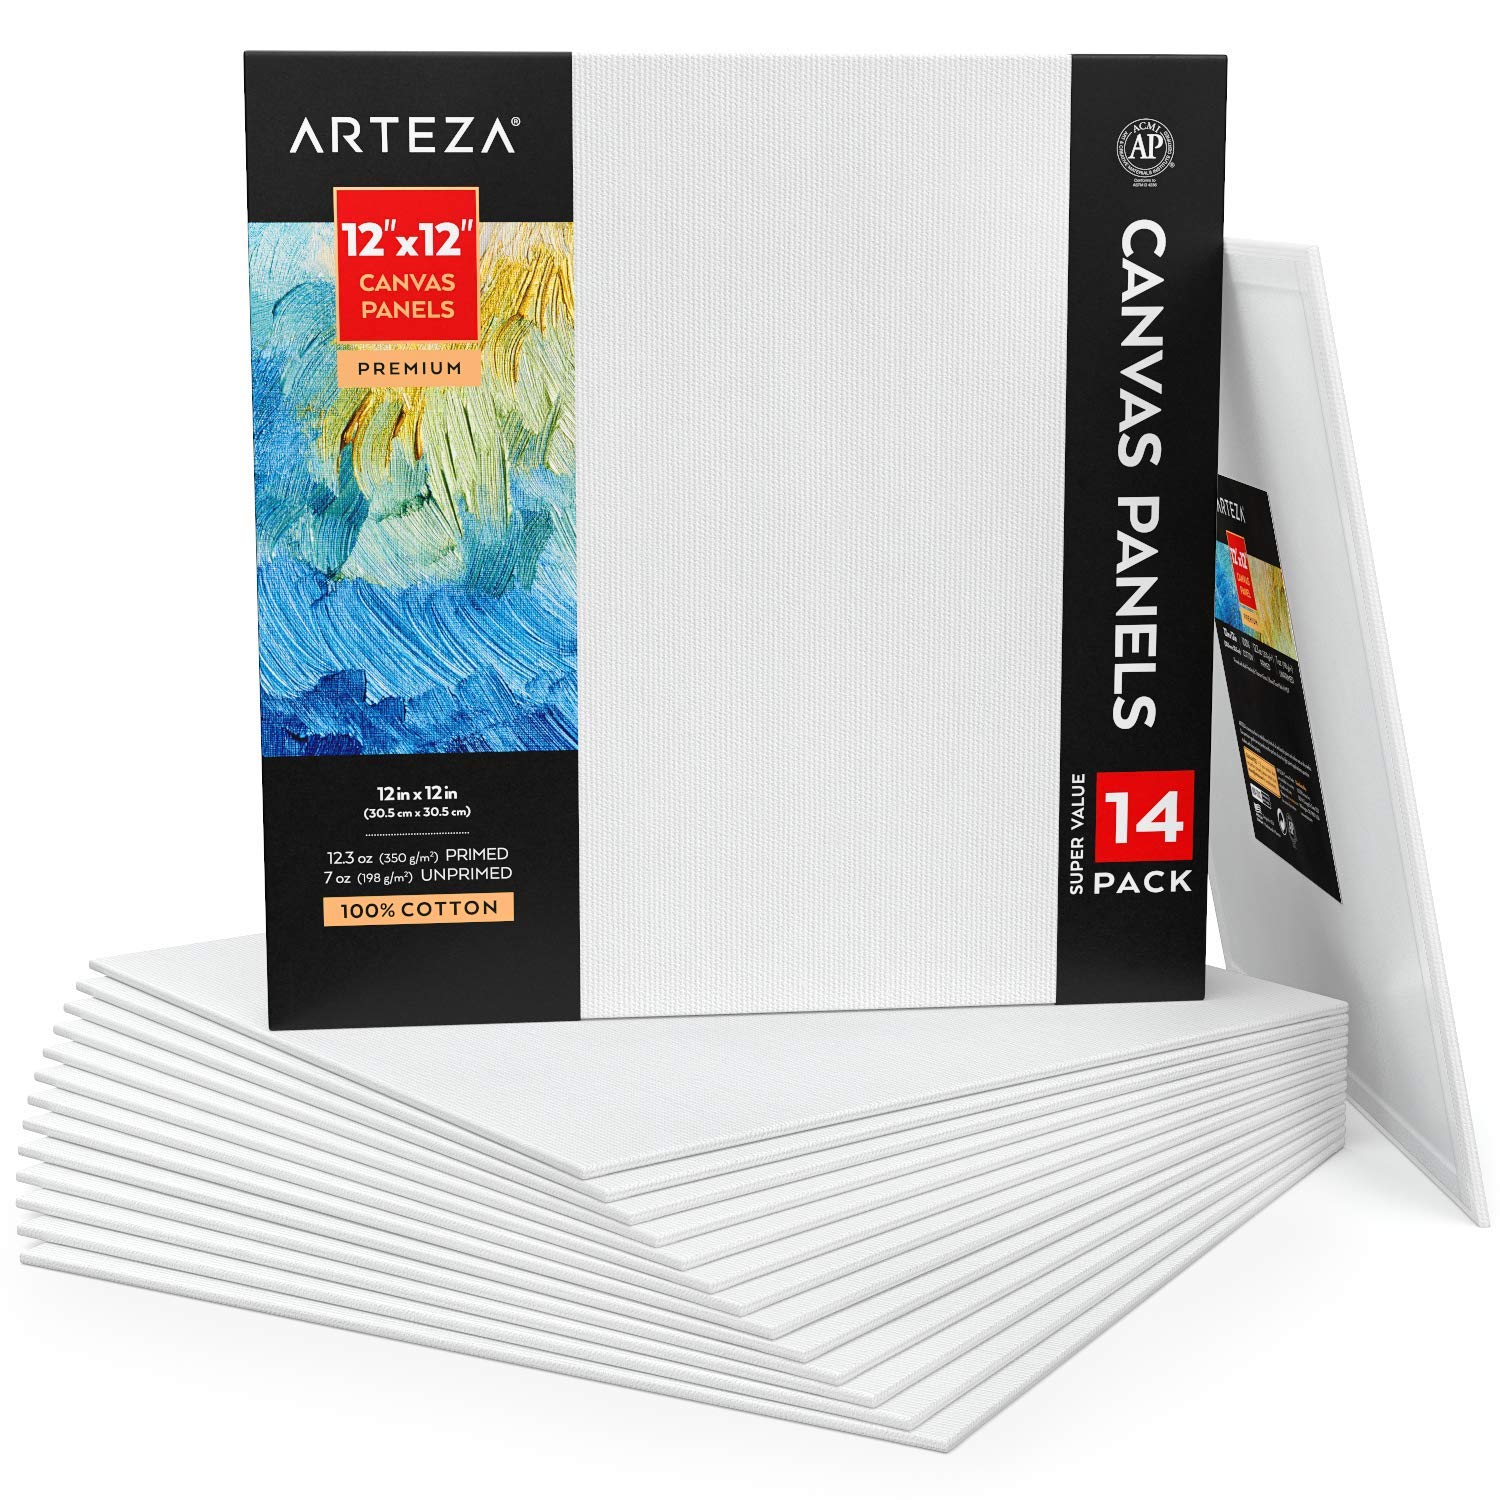 Arteza Malkarton 14er-Pack, weiße Leinwand 30.5 x 30.5 cm, 100% Baumwolle, grundierte Malpappe 350 g/m², für Acrylfarben, Ölfarben und Nass-Art Medien, Leinwände für Künstler & Hobbymaler